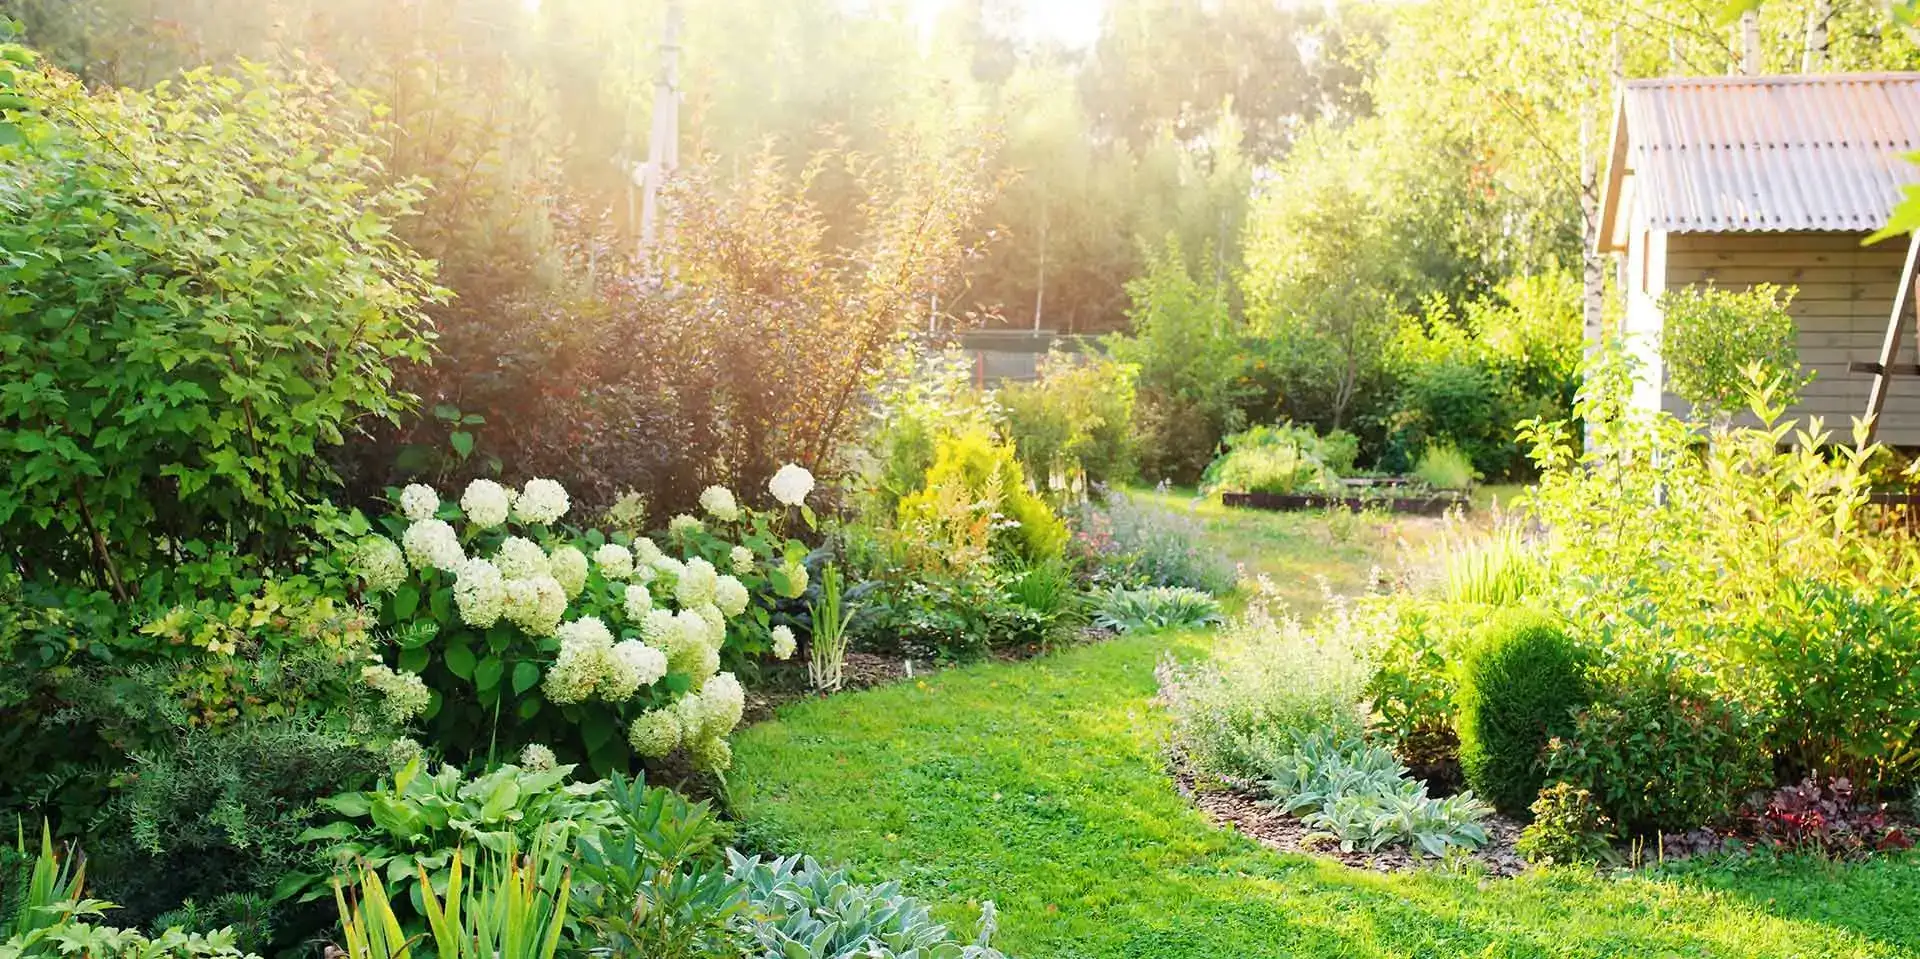 <span>Le secret d'un jardin magnifique réside dans les détails</span> Confiez-nous en la beauté